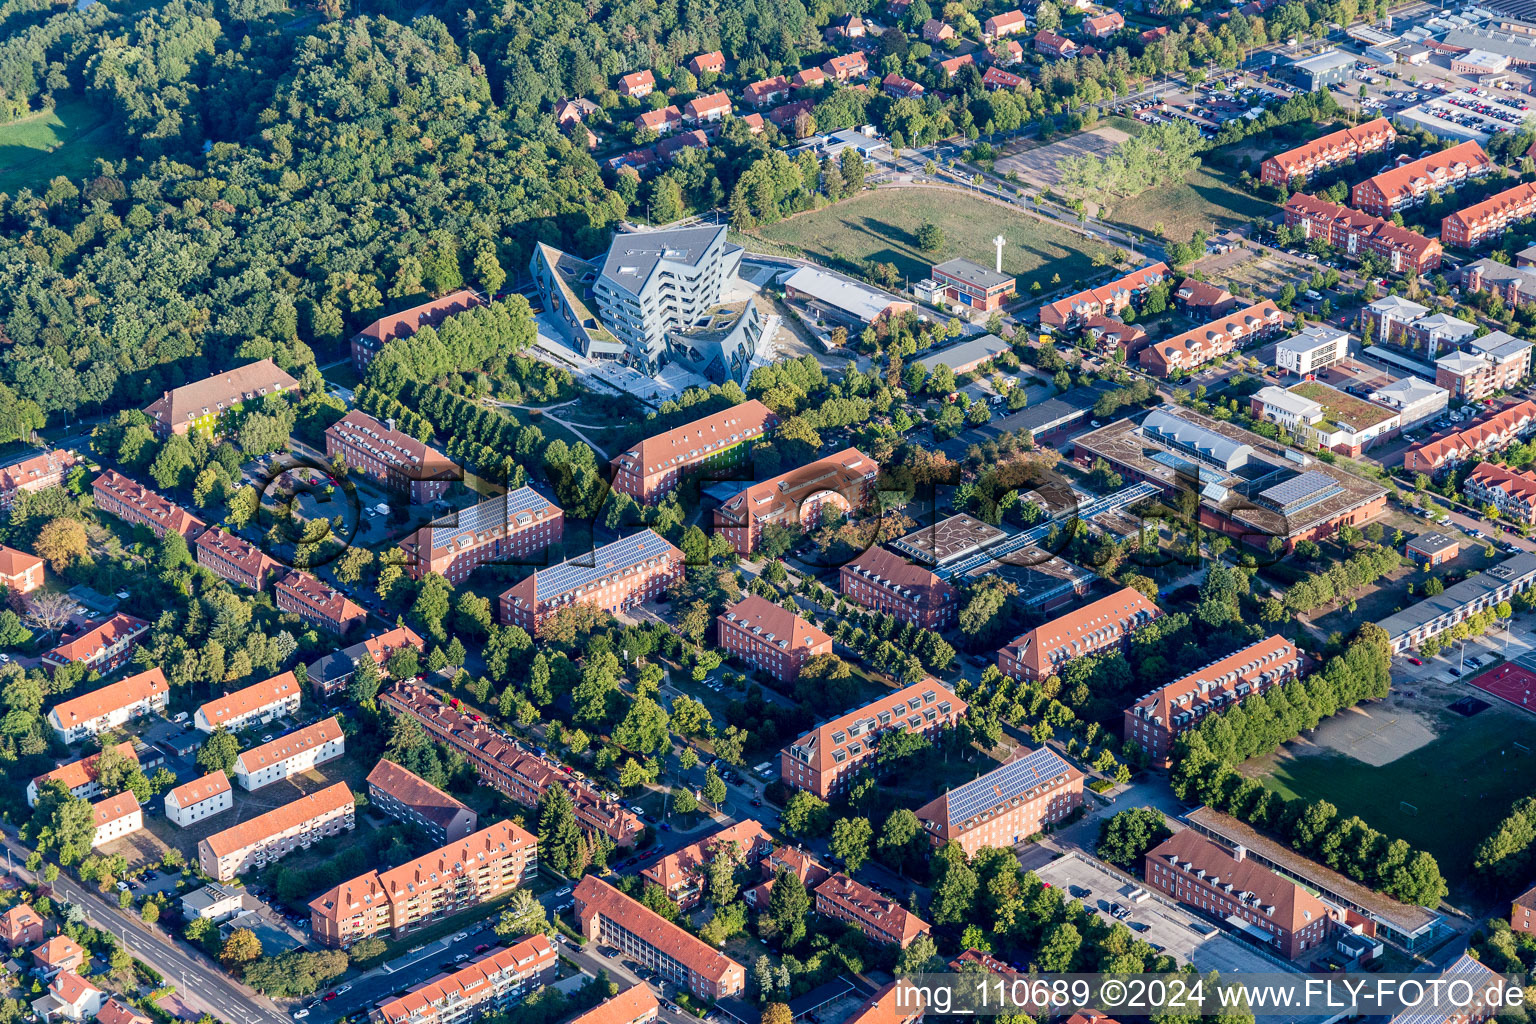 Drohnenbild von Campus- Universitäts- Bereich Zentralgebäude Leuphana Universität Lüneburg vom Architekt Libeskind in Lüneburg im Bundesland Niedersachsen, Deutschland